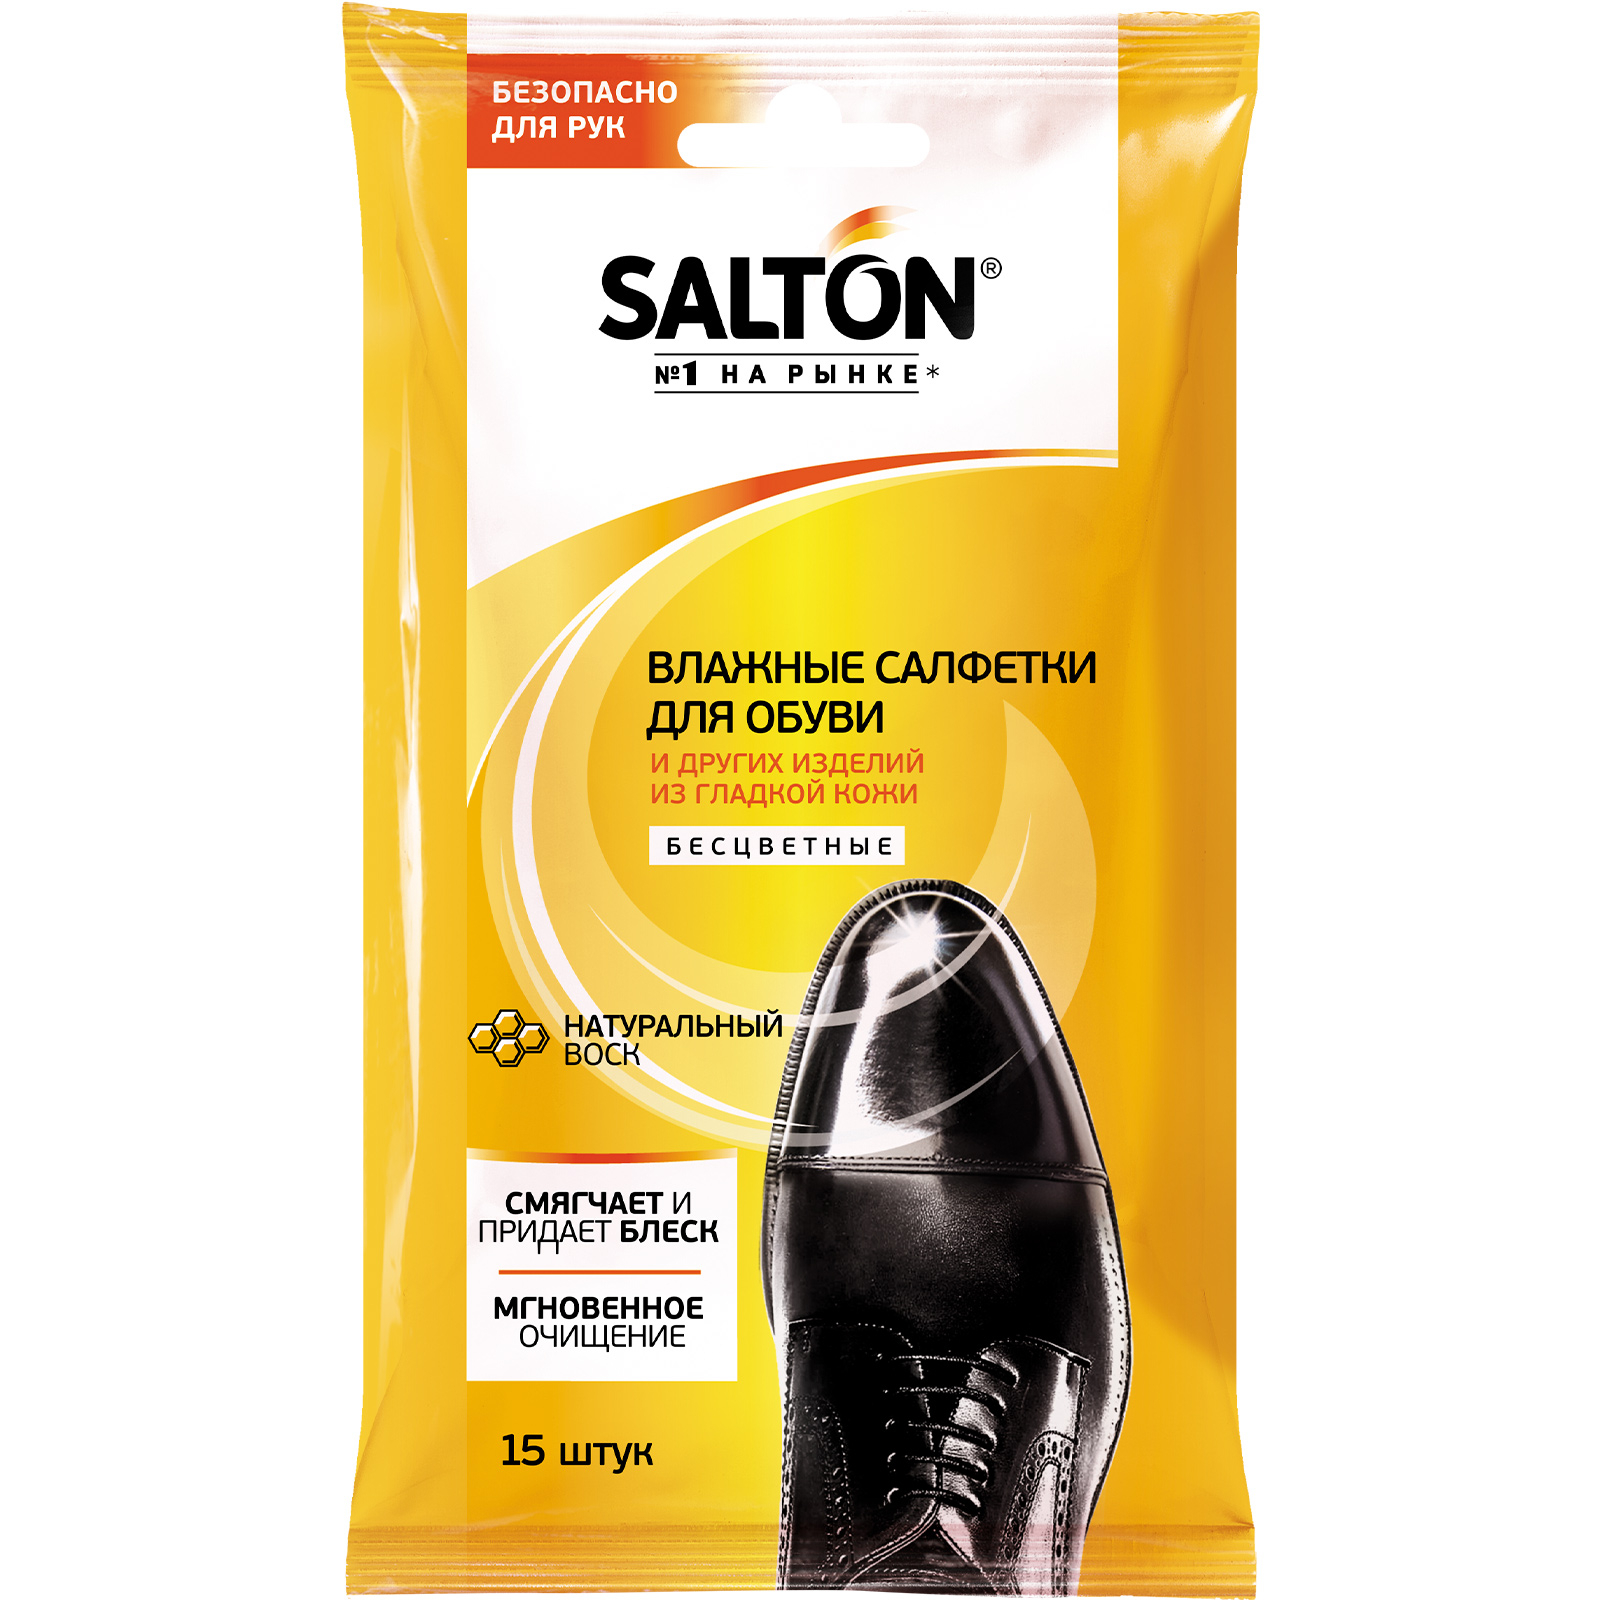 Влажные салфетки Salton для обуви из гладкой кожи, 15 шт